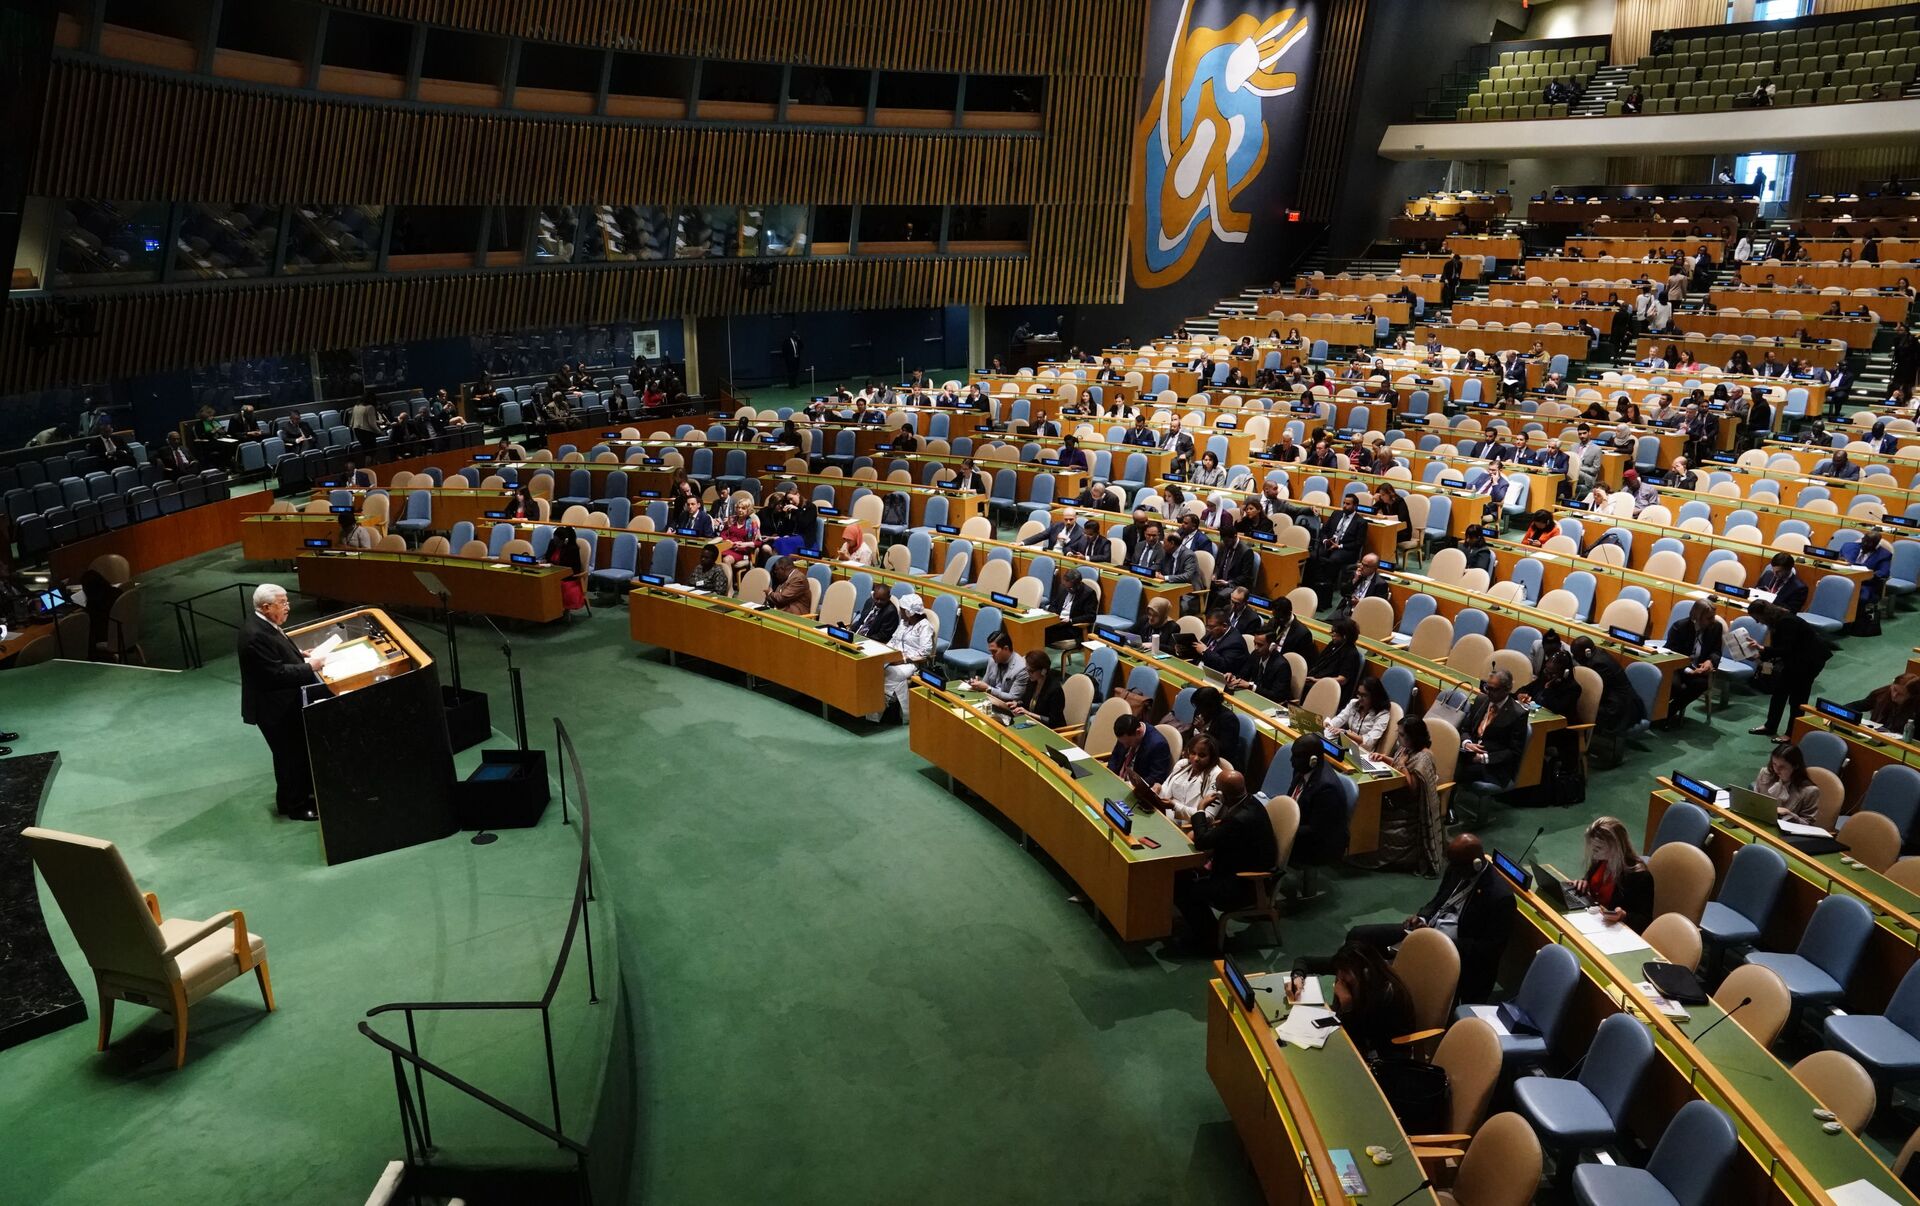 Зал оон. Генеральная Ассамблея ООН Нью-Йорк. 1. Генеральная Ассамблея ООН (га ООН). Зал Генеральной Ассамблеи ООН. Заседание Генассамблеи ООН 2003.